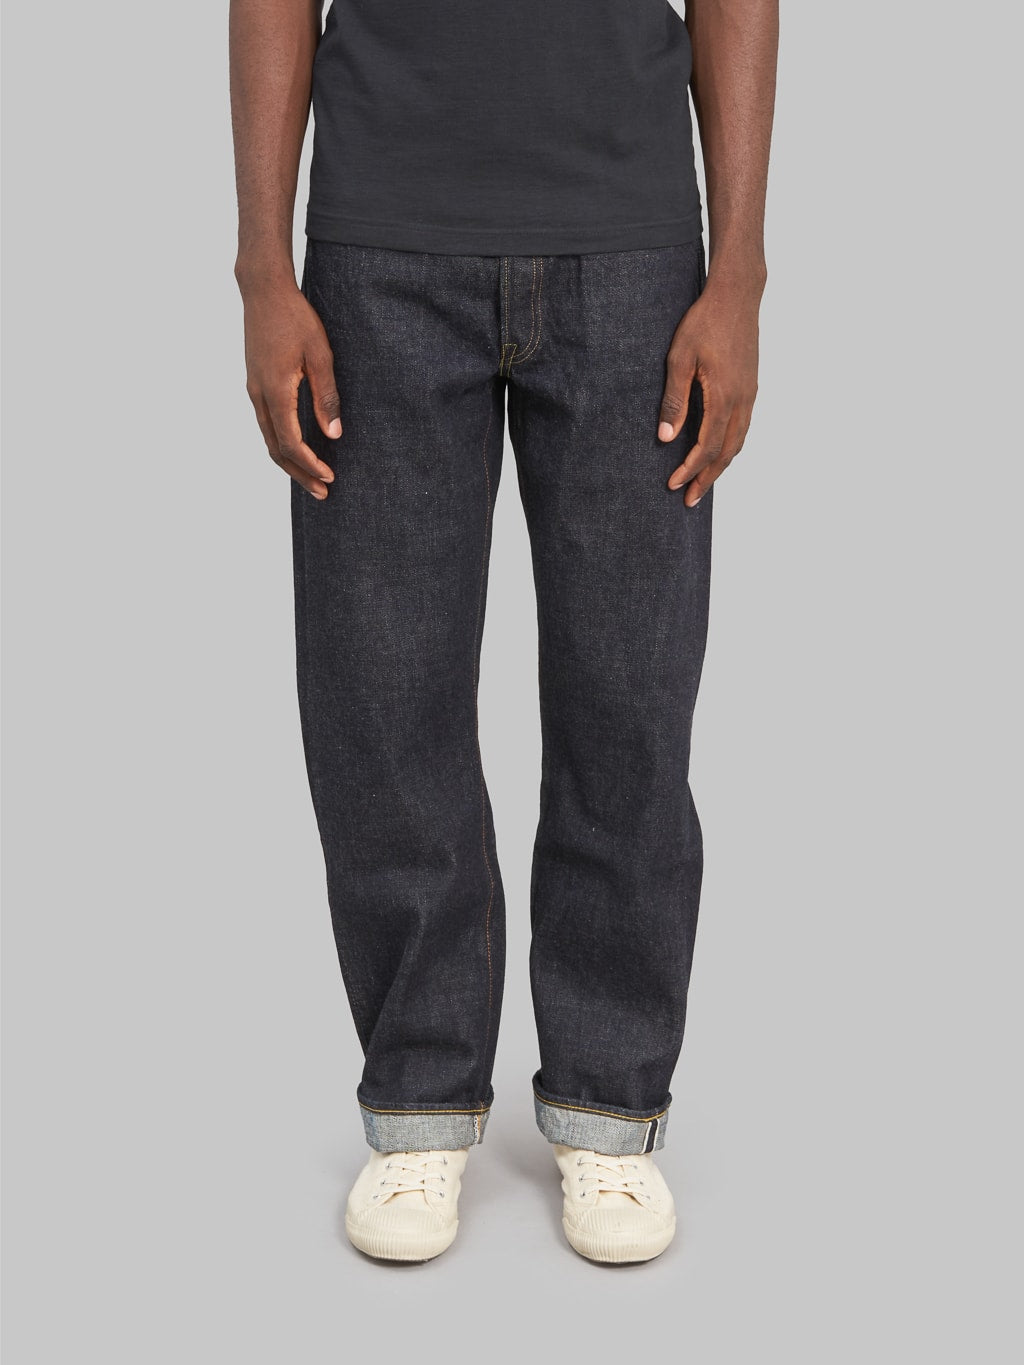 Fullcount 1101XXW regular Straight selvedge Jeans front fit